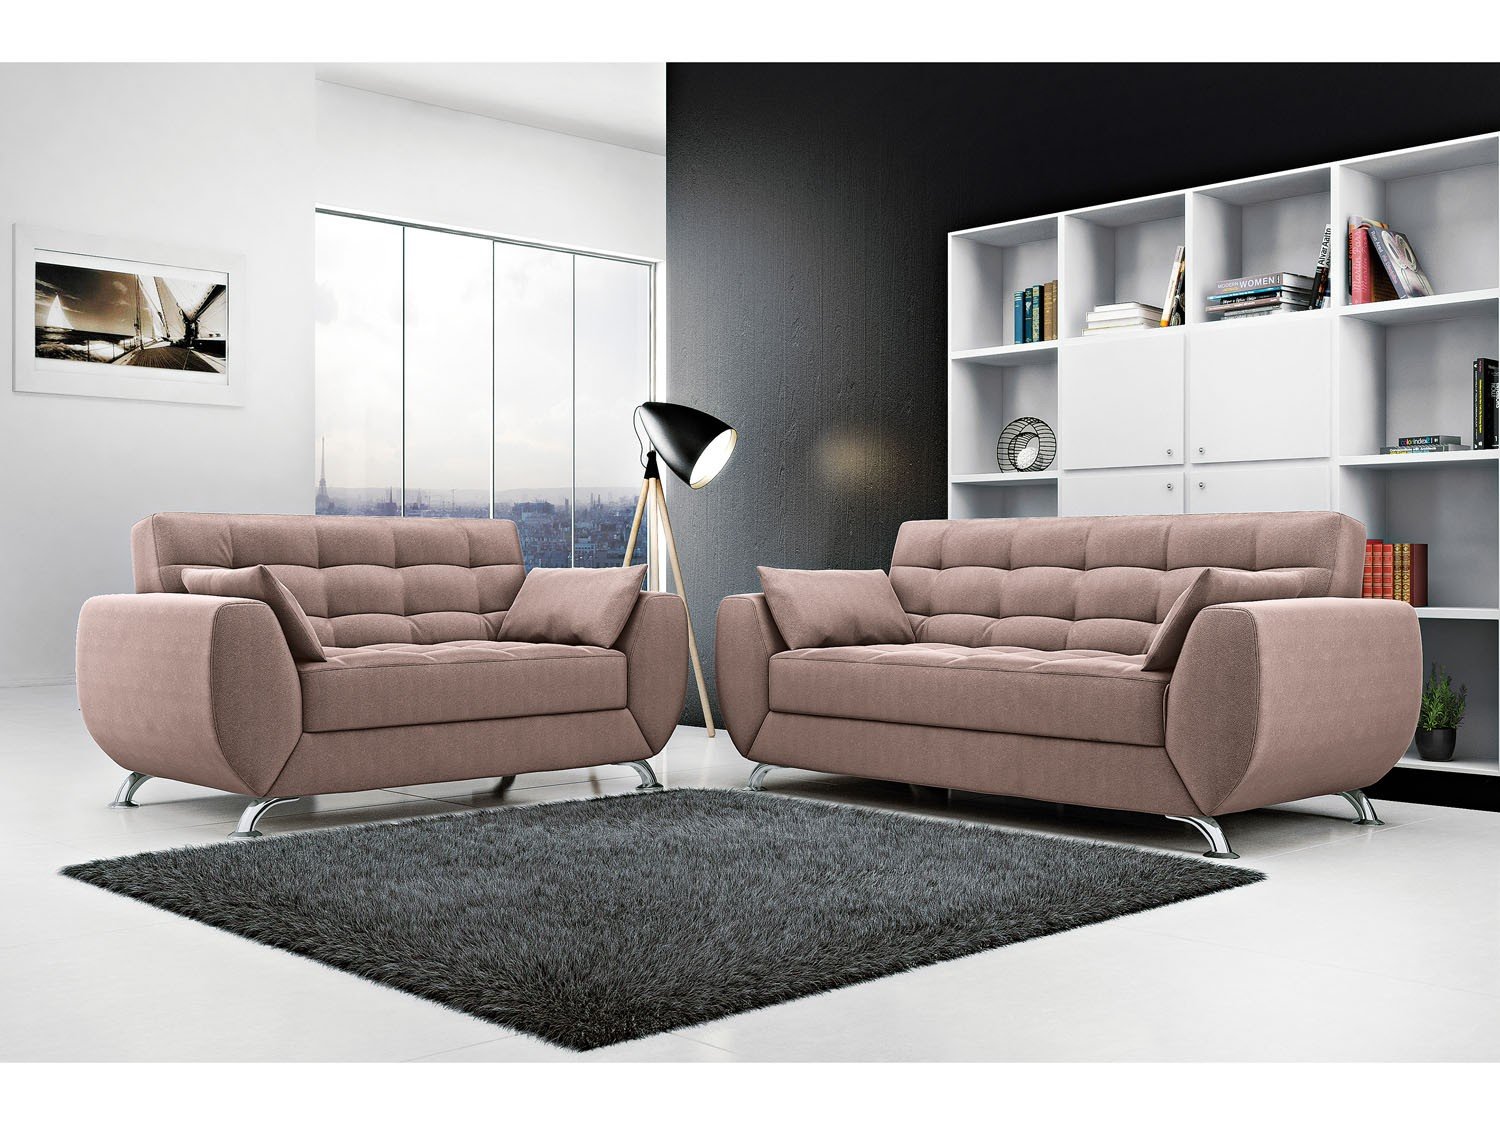 Details 100 ver modelos de sofá